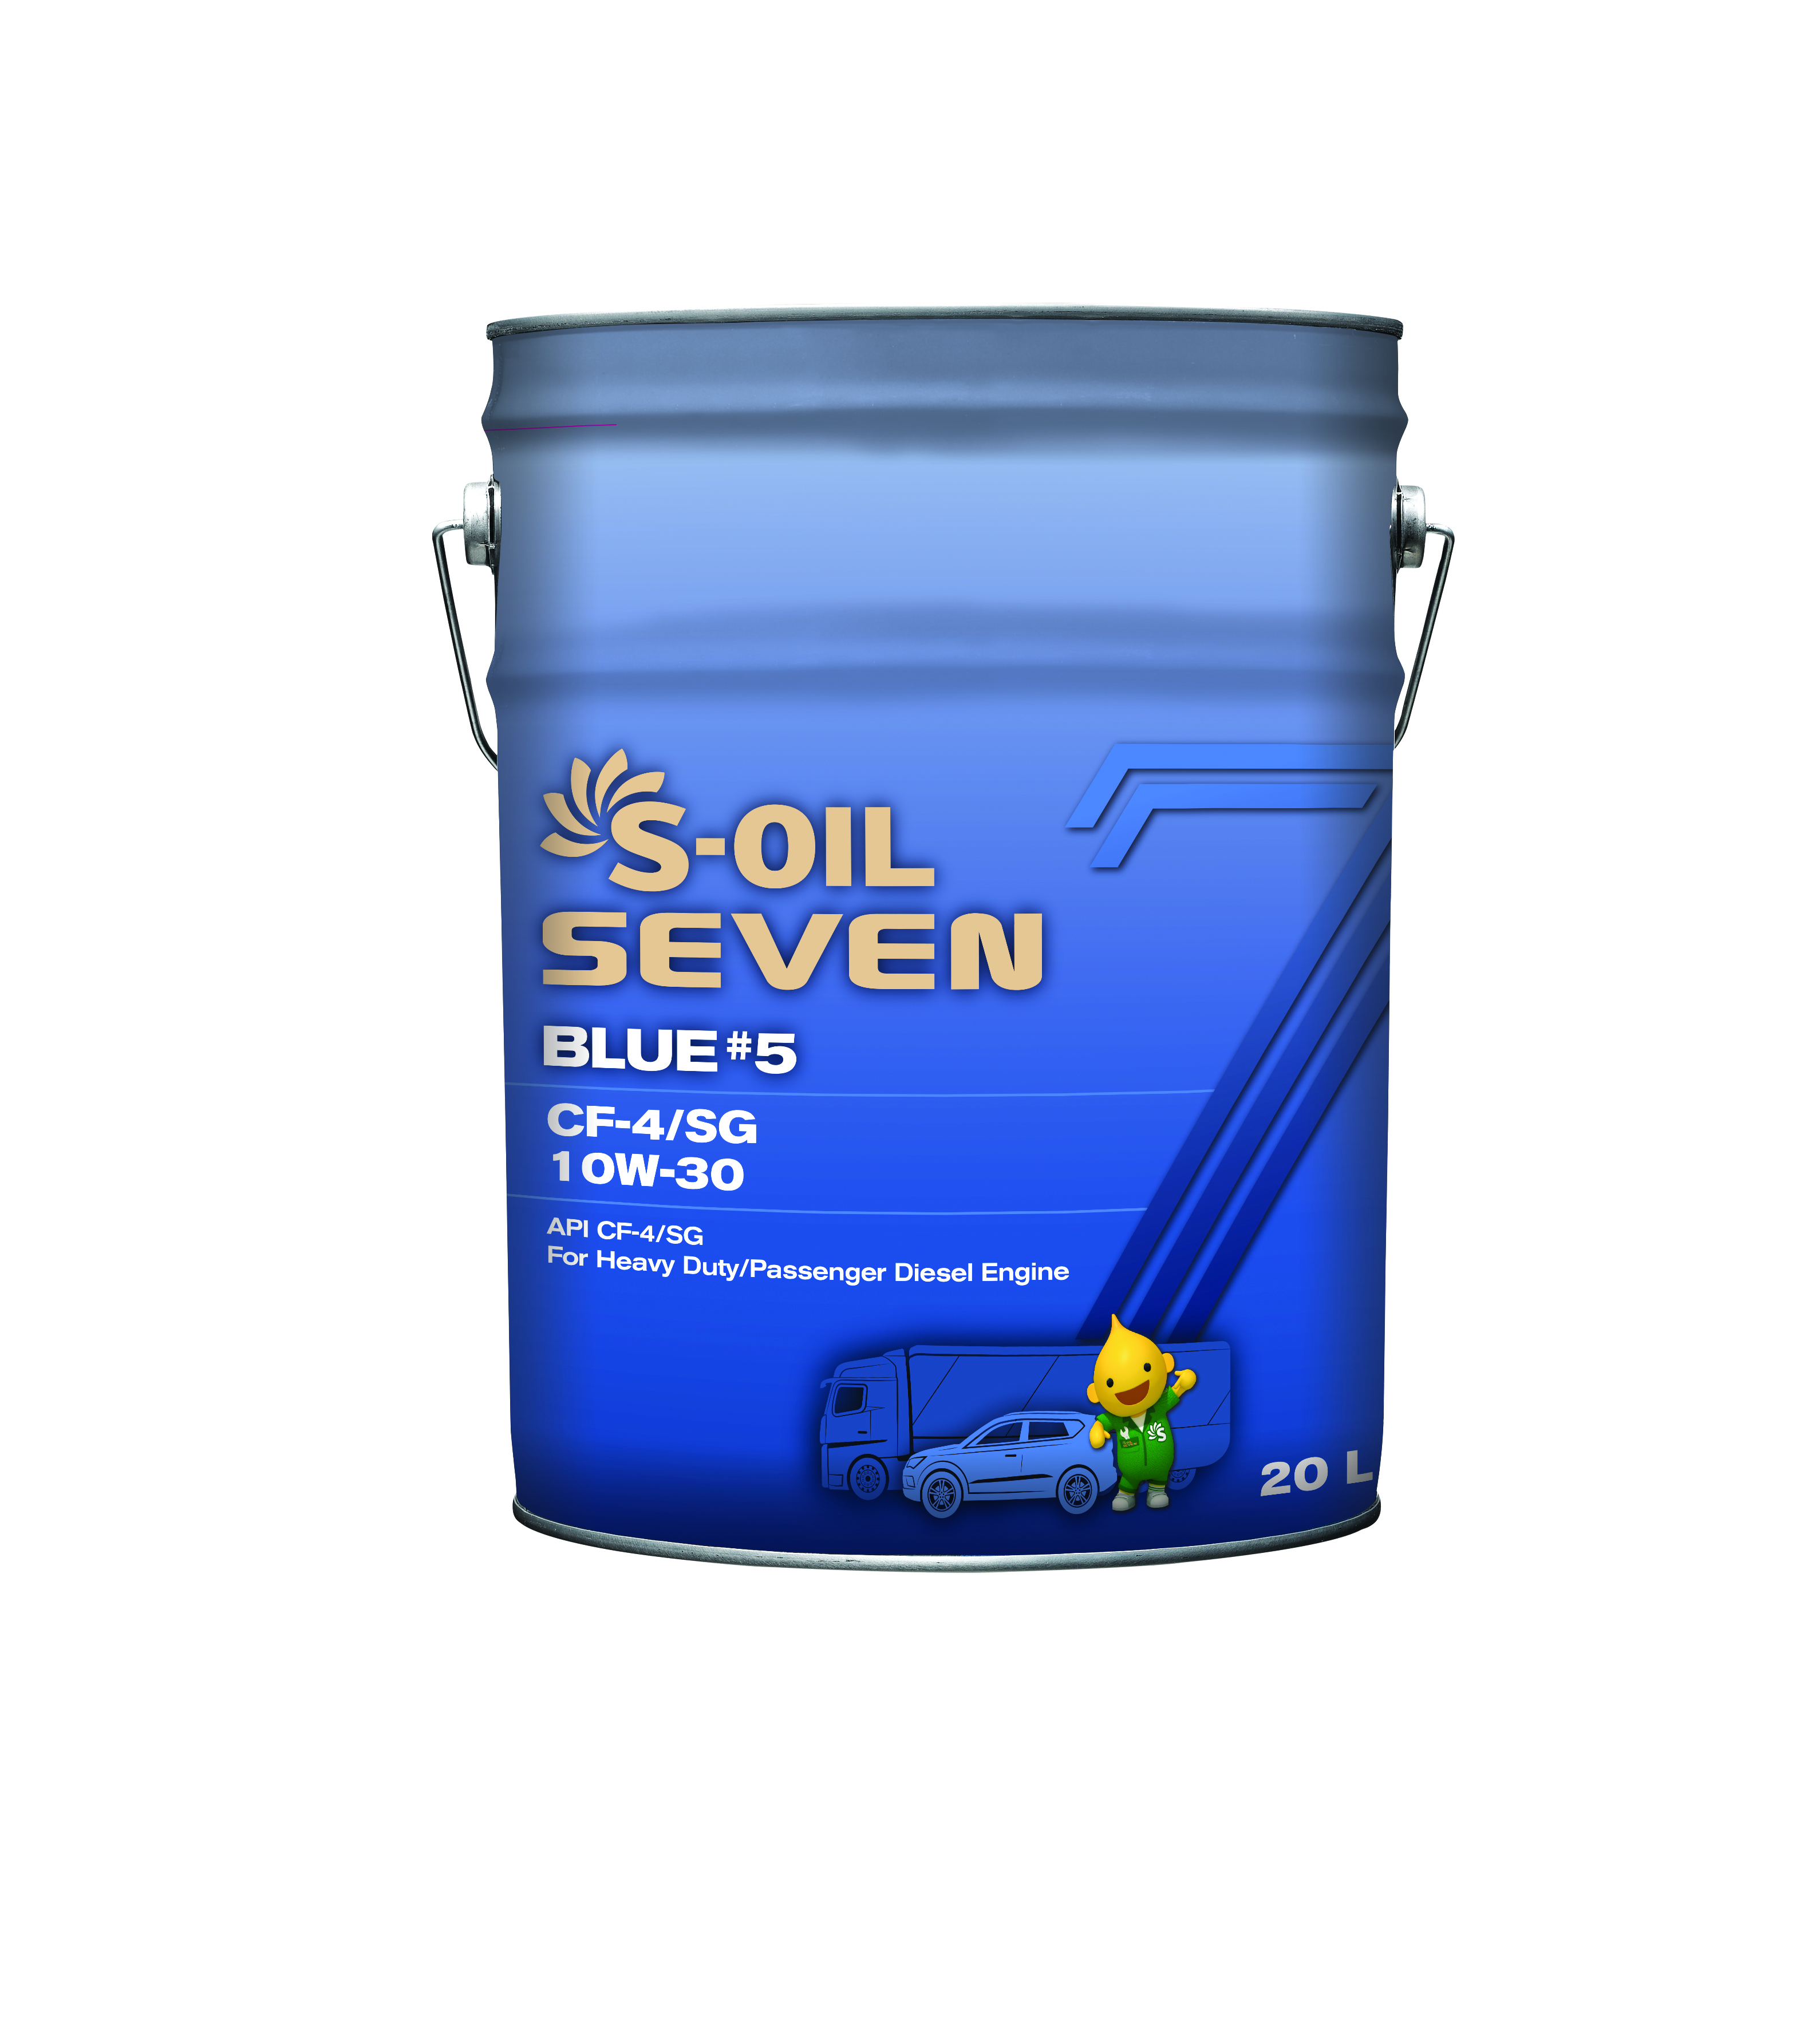 Масло Моторное S-OIL 7 BLUE #5 CF-4/SG 10W30 (20л)